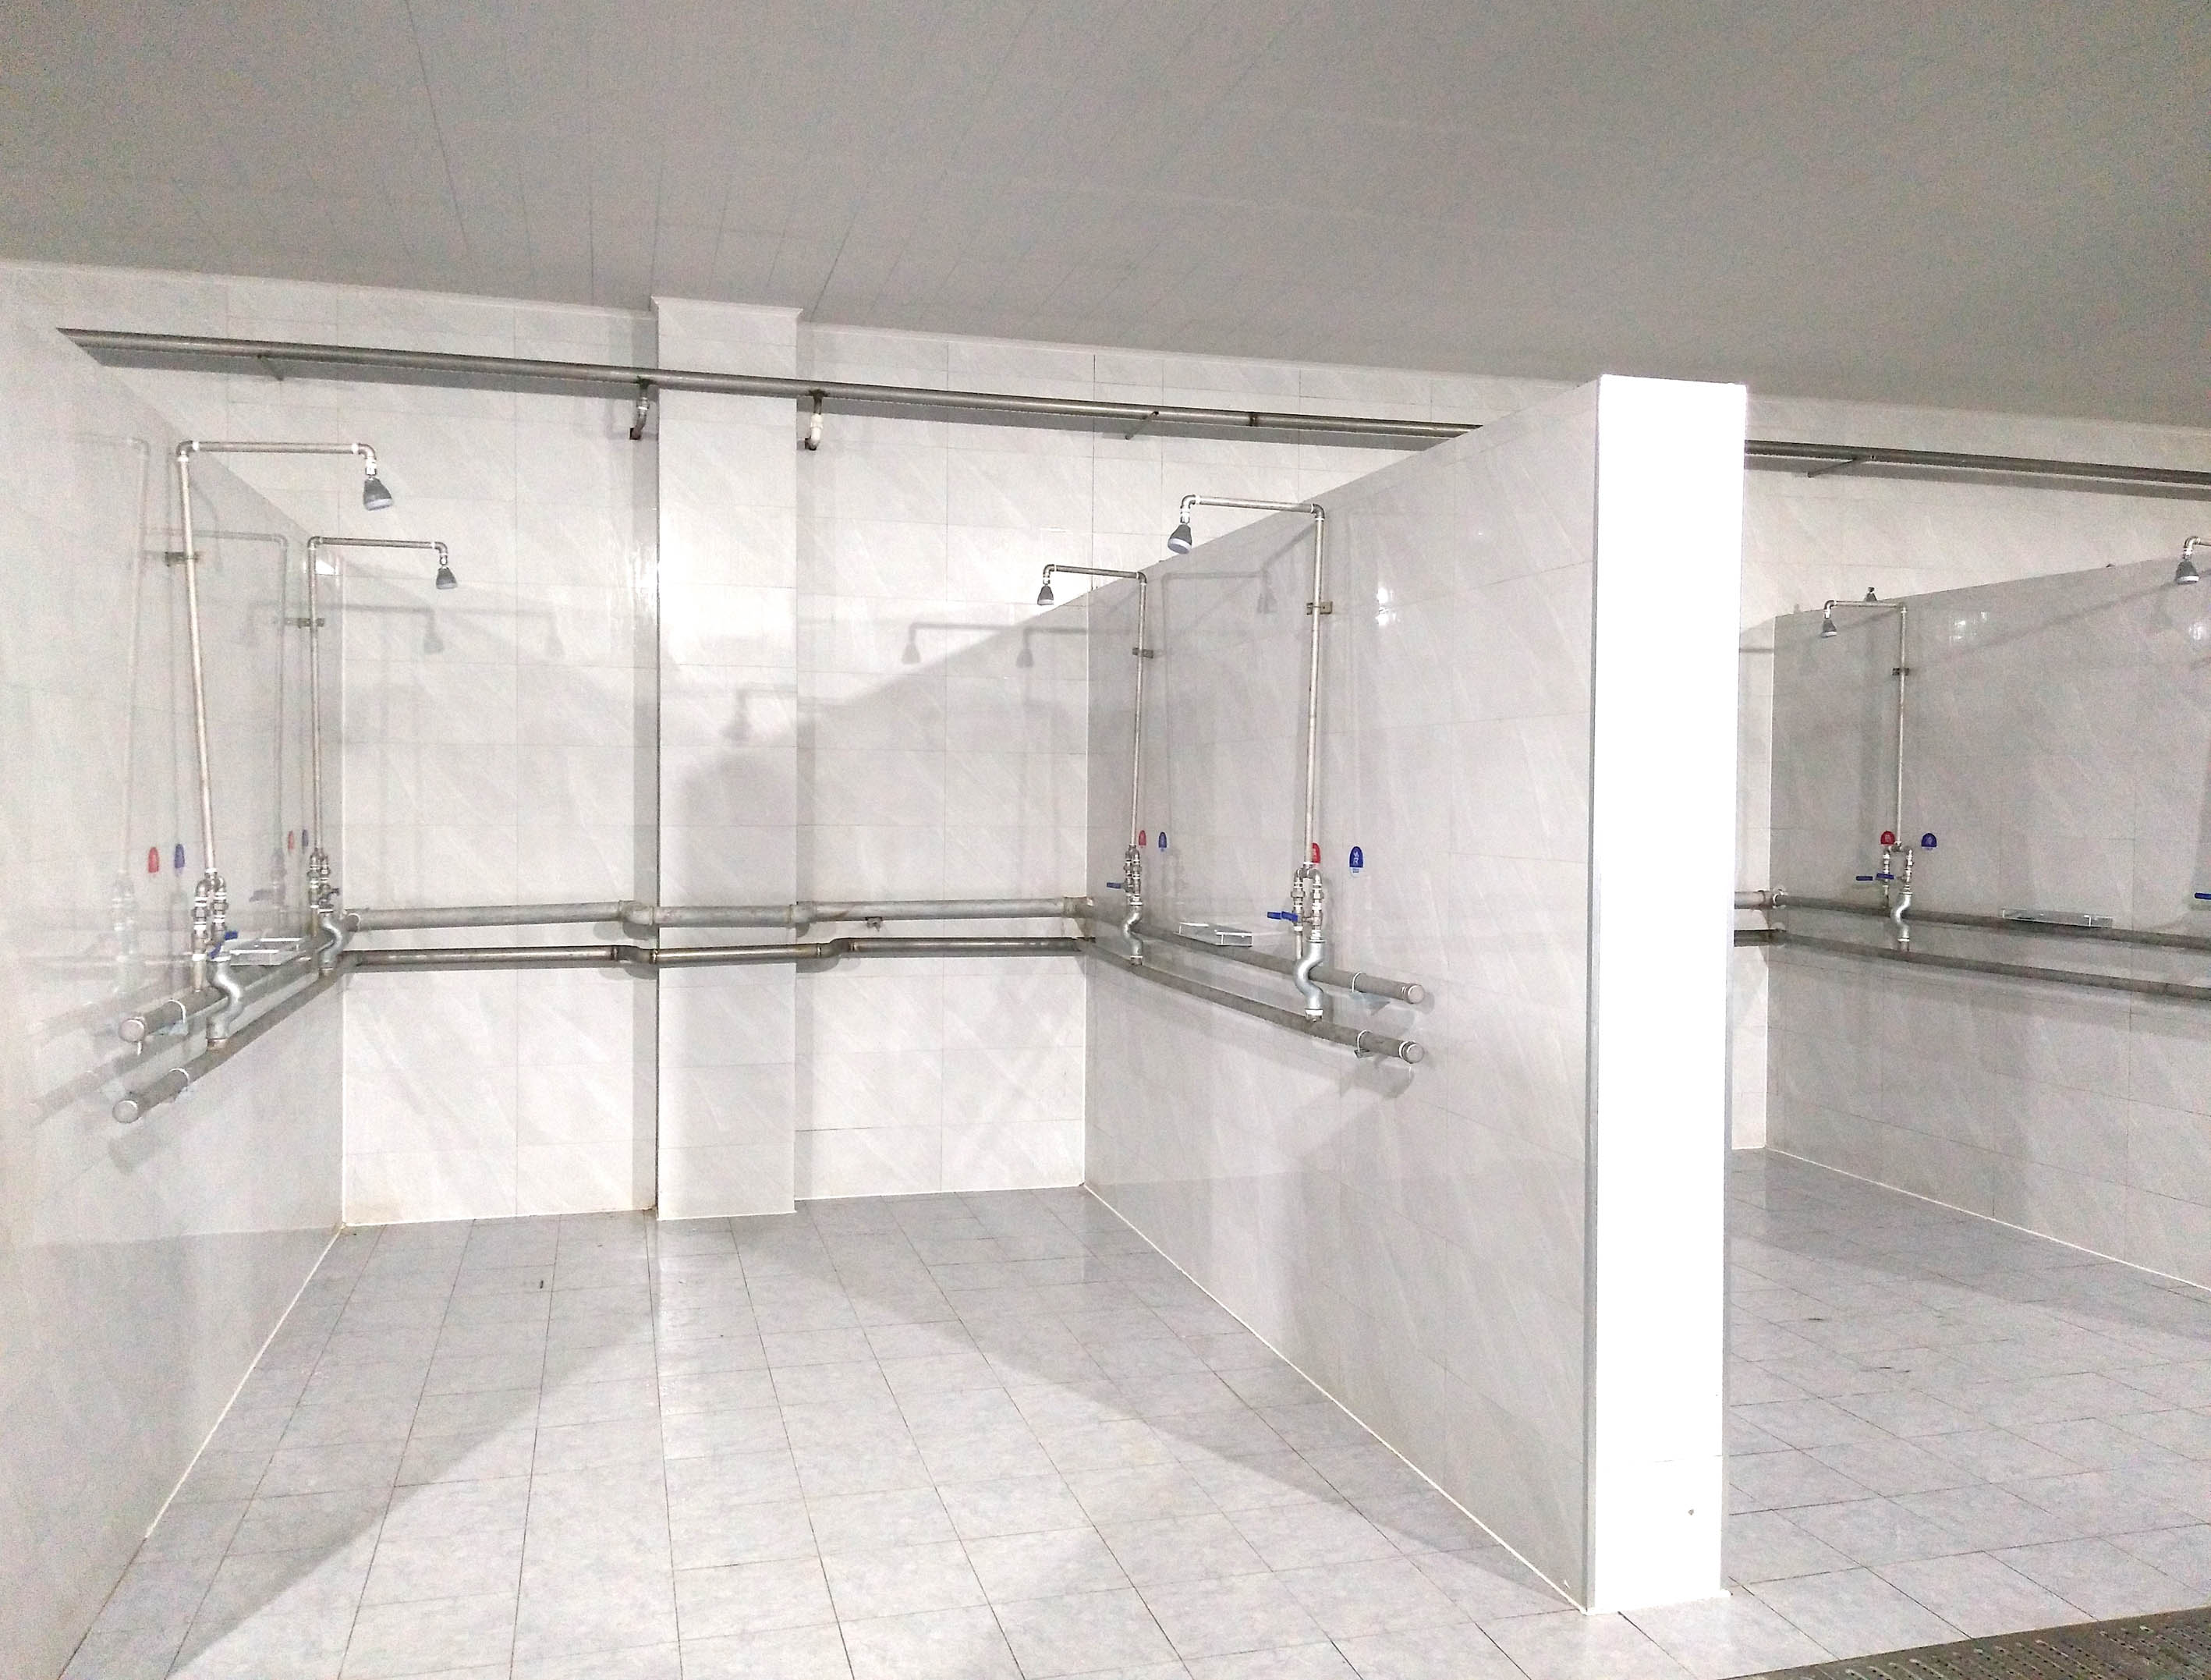 长安校区新建学生浴室工程竣工验收-西北大学基建处网站